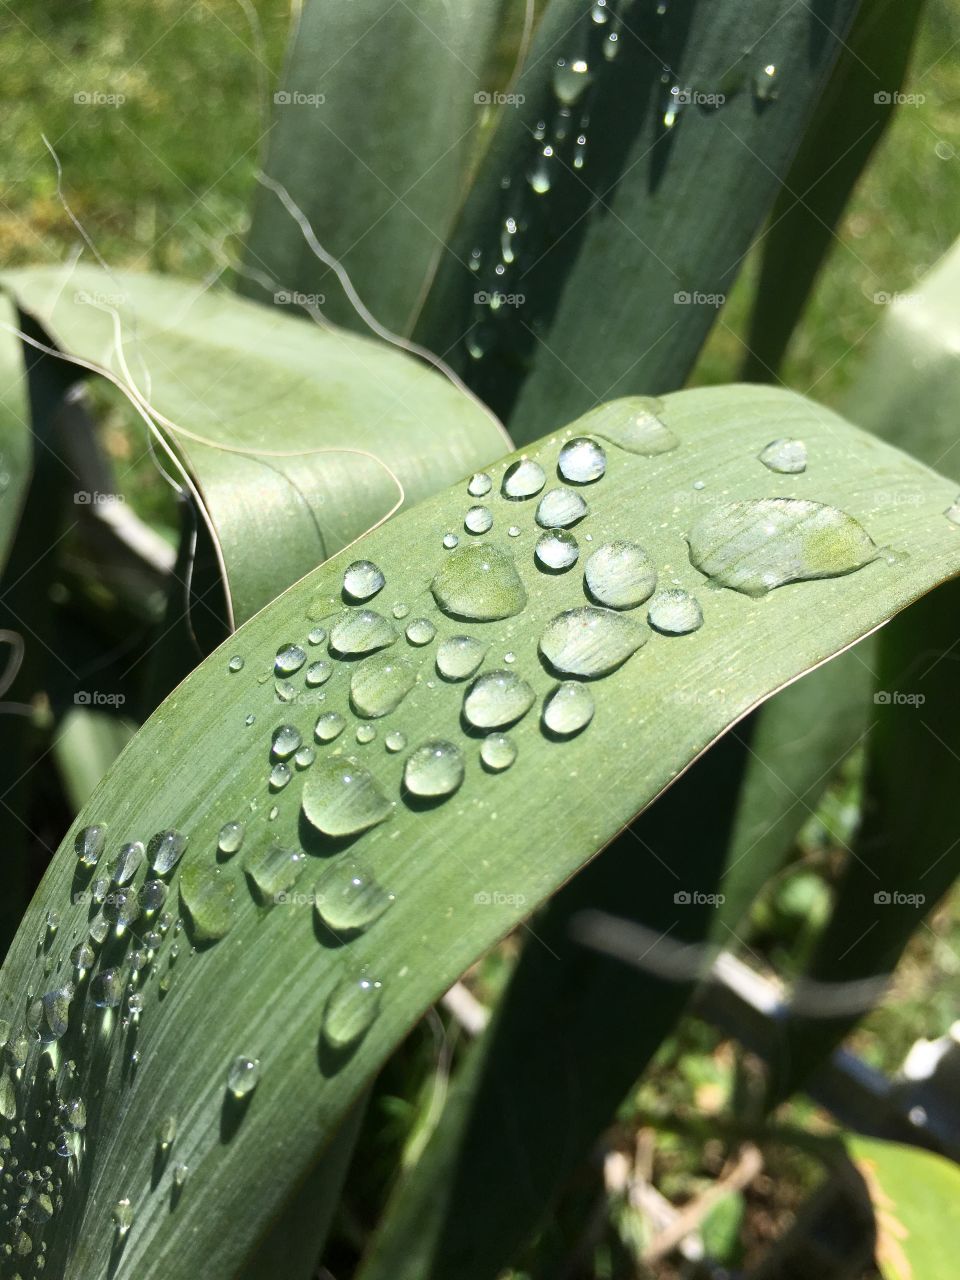 Dew drops on yucca leaf 